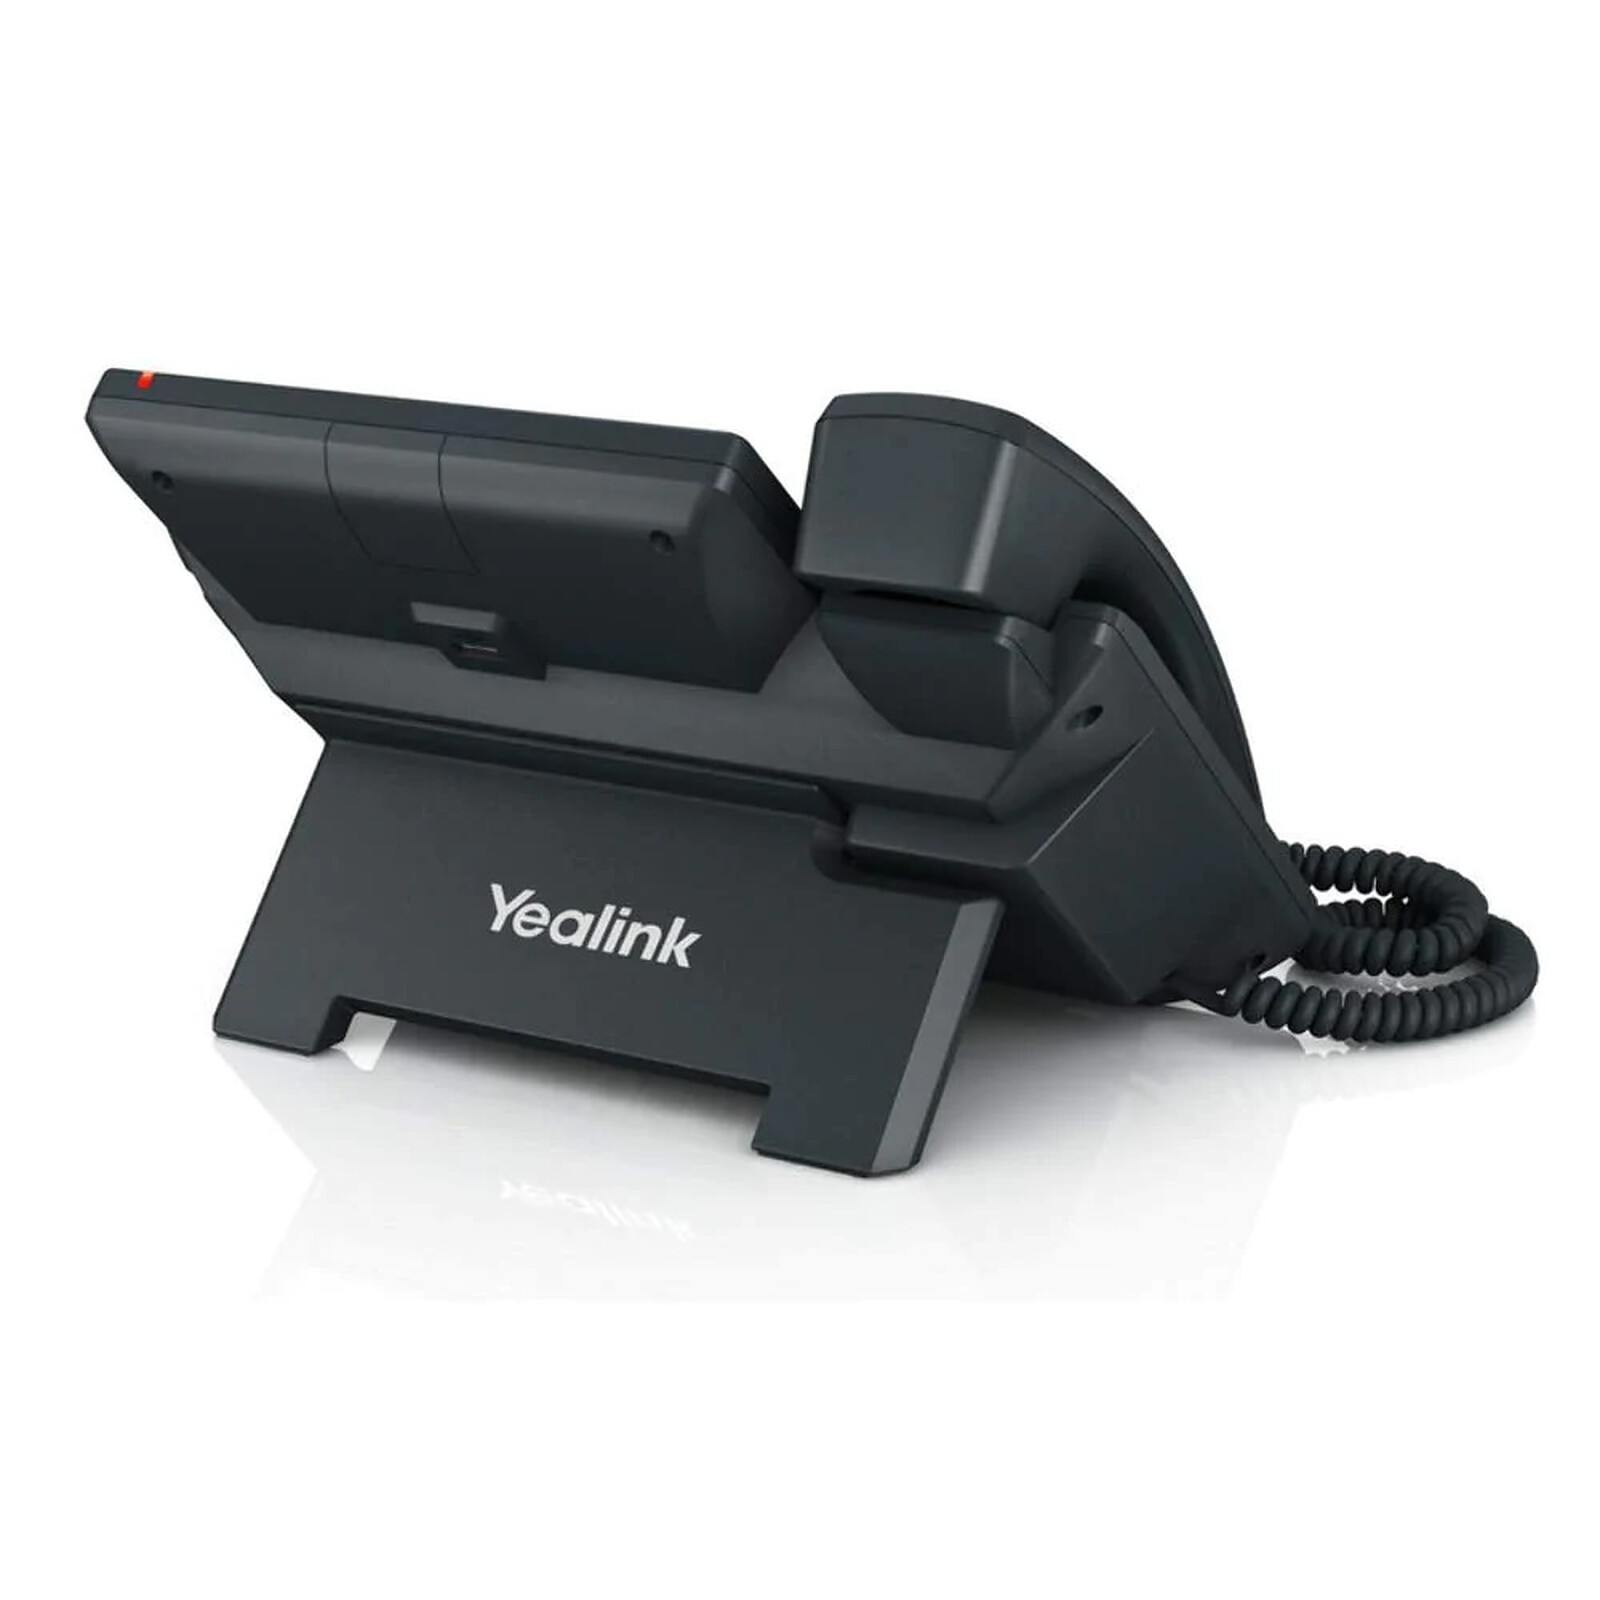 Yealink SIP T58W avec caméra - Téléphonie VoIP - Garantie 3 ans LDLC